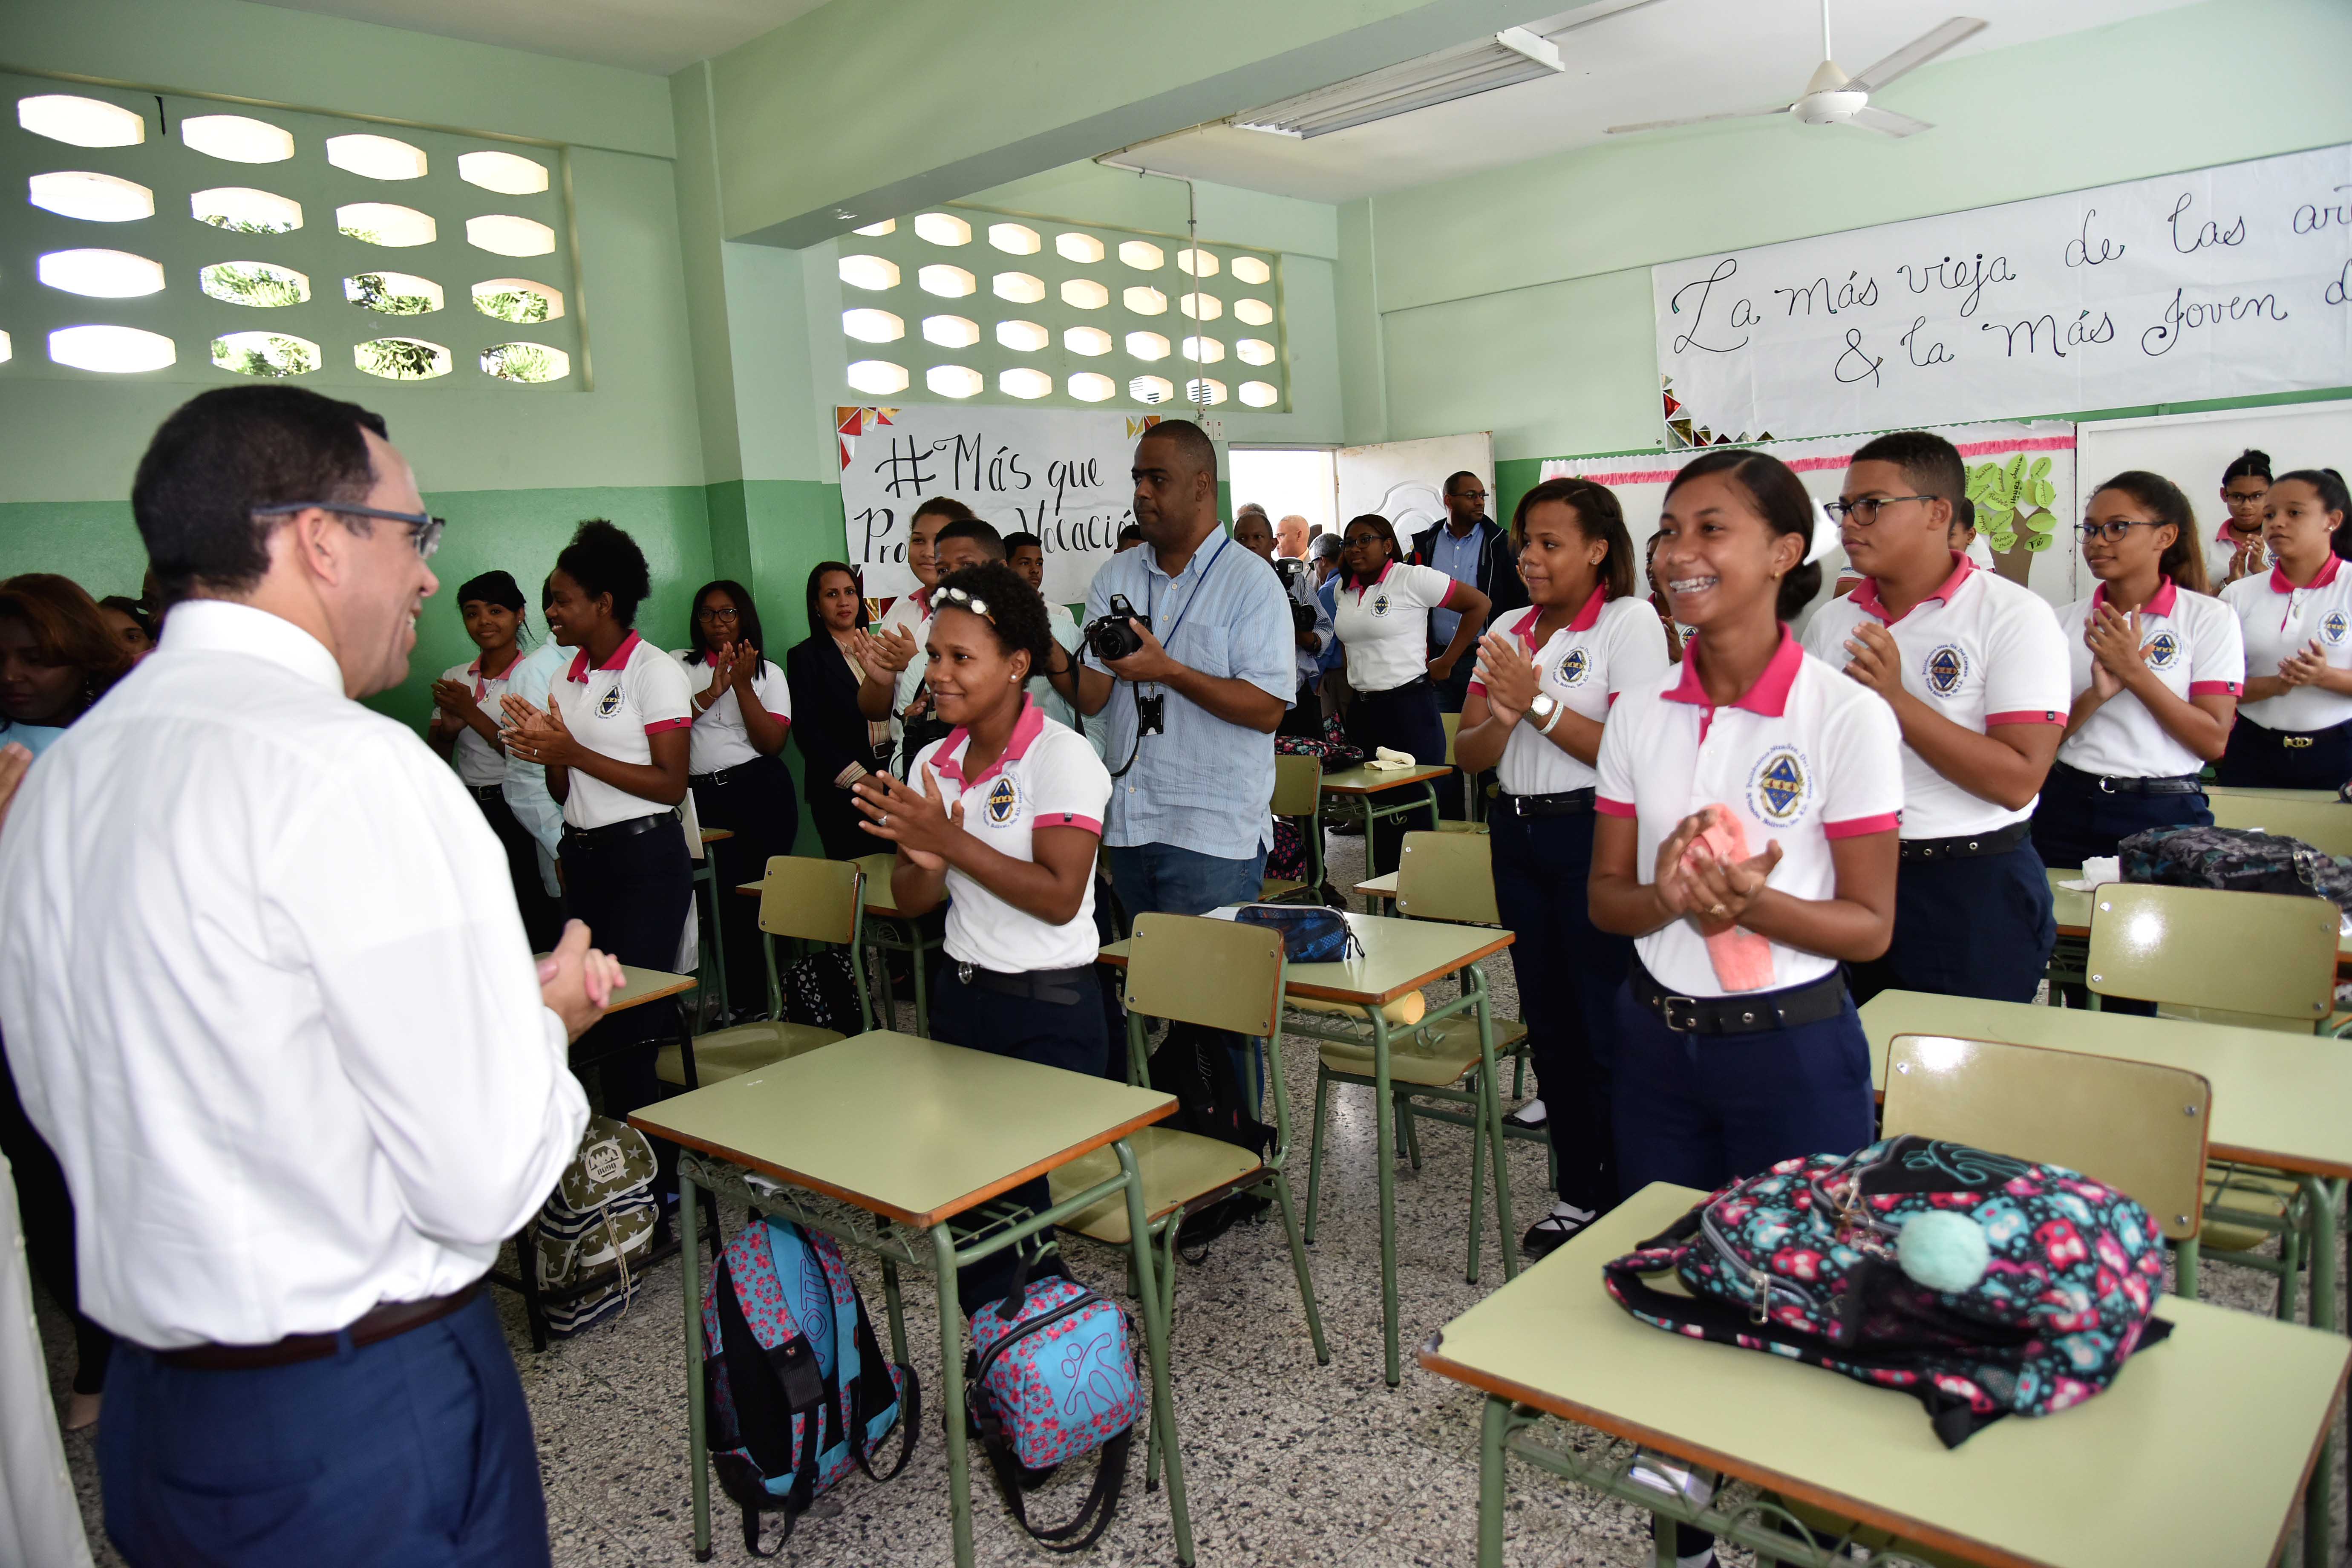  imagen Ministro Andrés Navarro en aula frente a estudiantes de politécnico Nuestra Señora Del Carmen en Simón Bolívar  